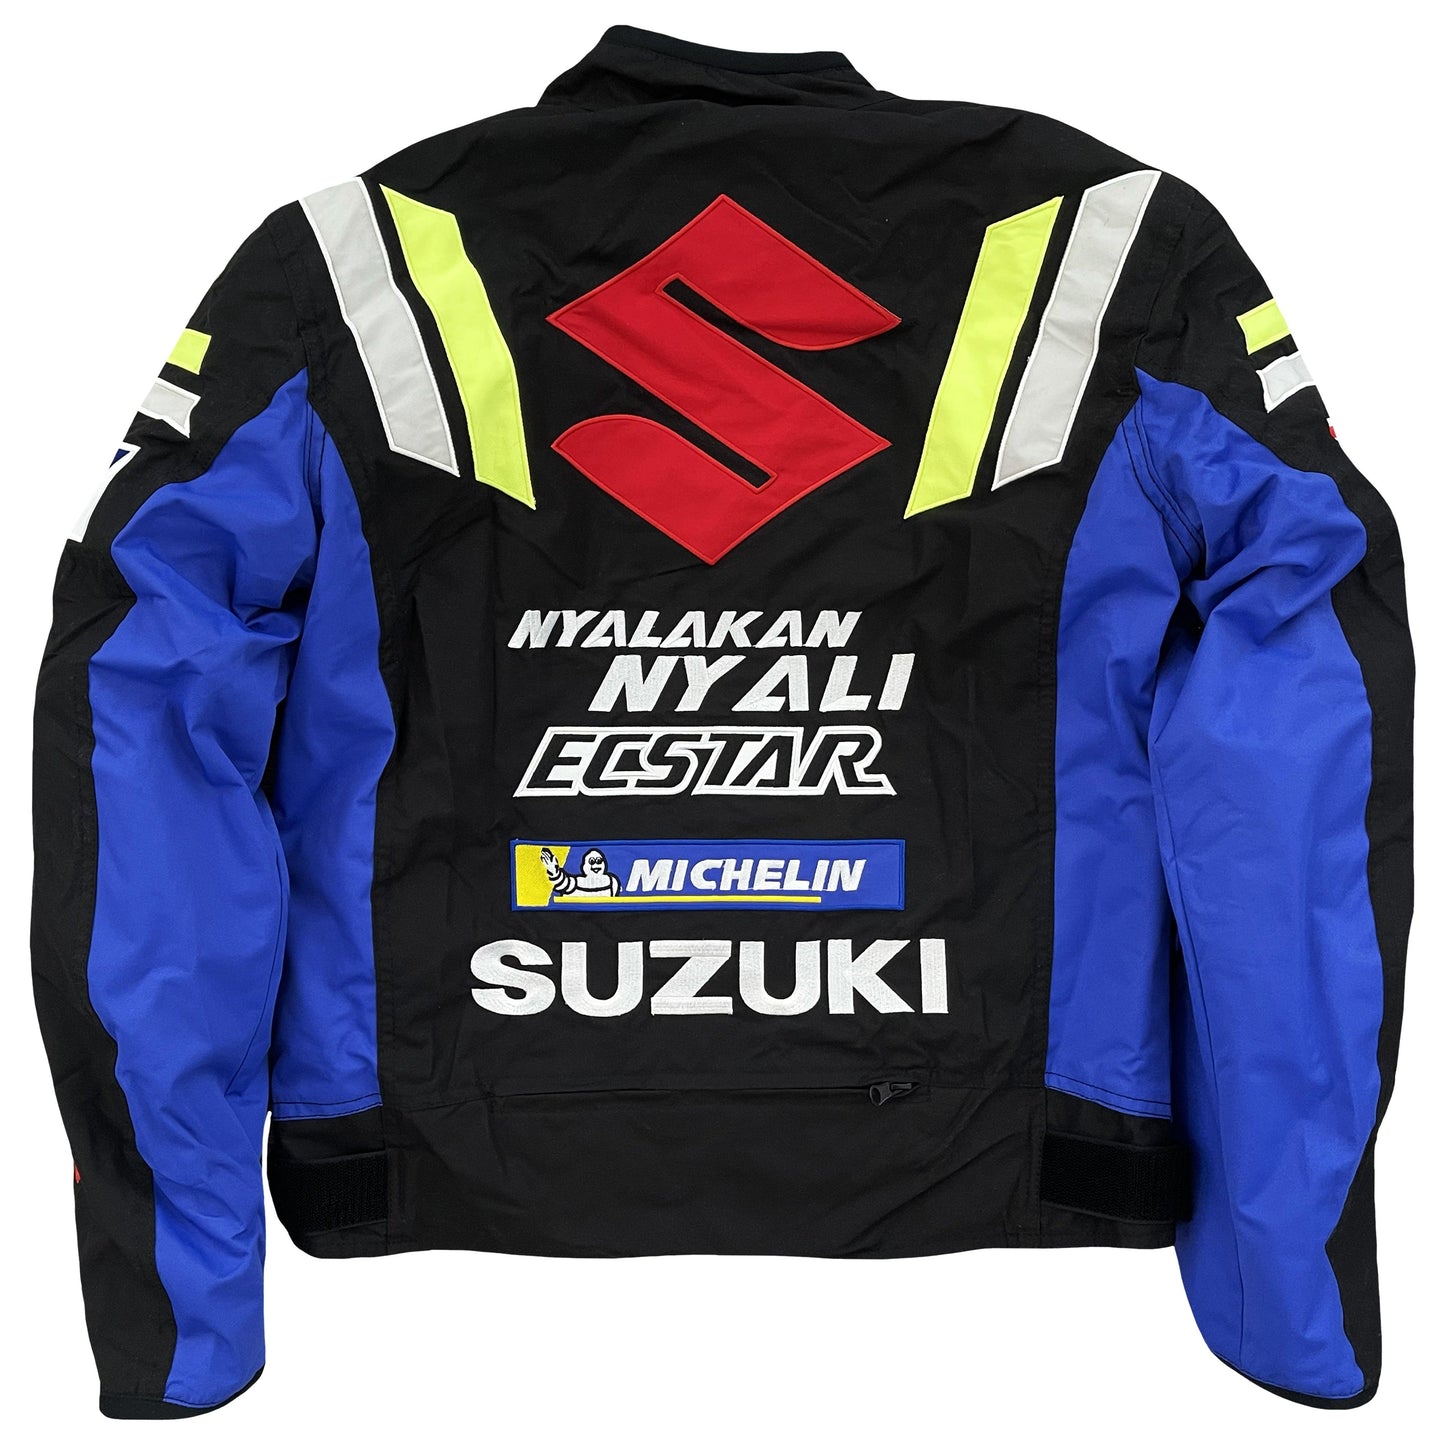 Suzuki Motorcycle Racer Jacket - Known Source